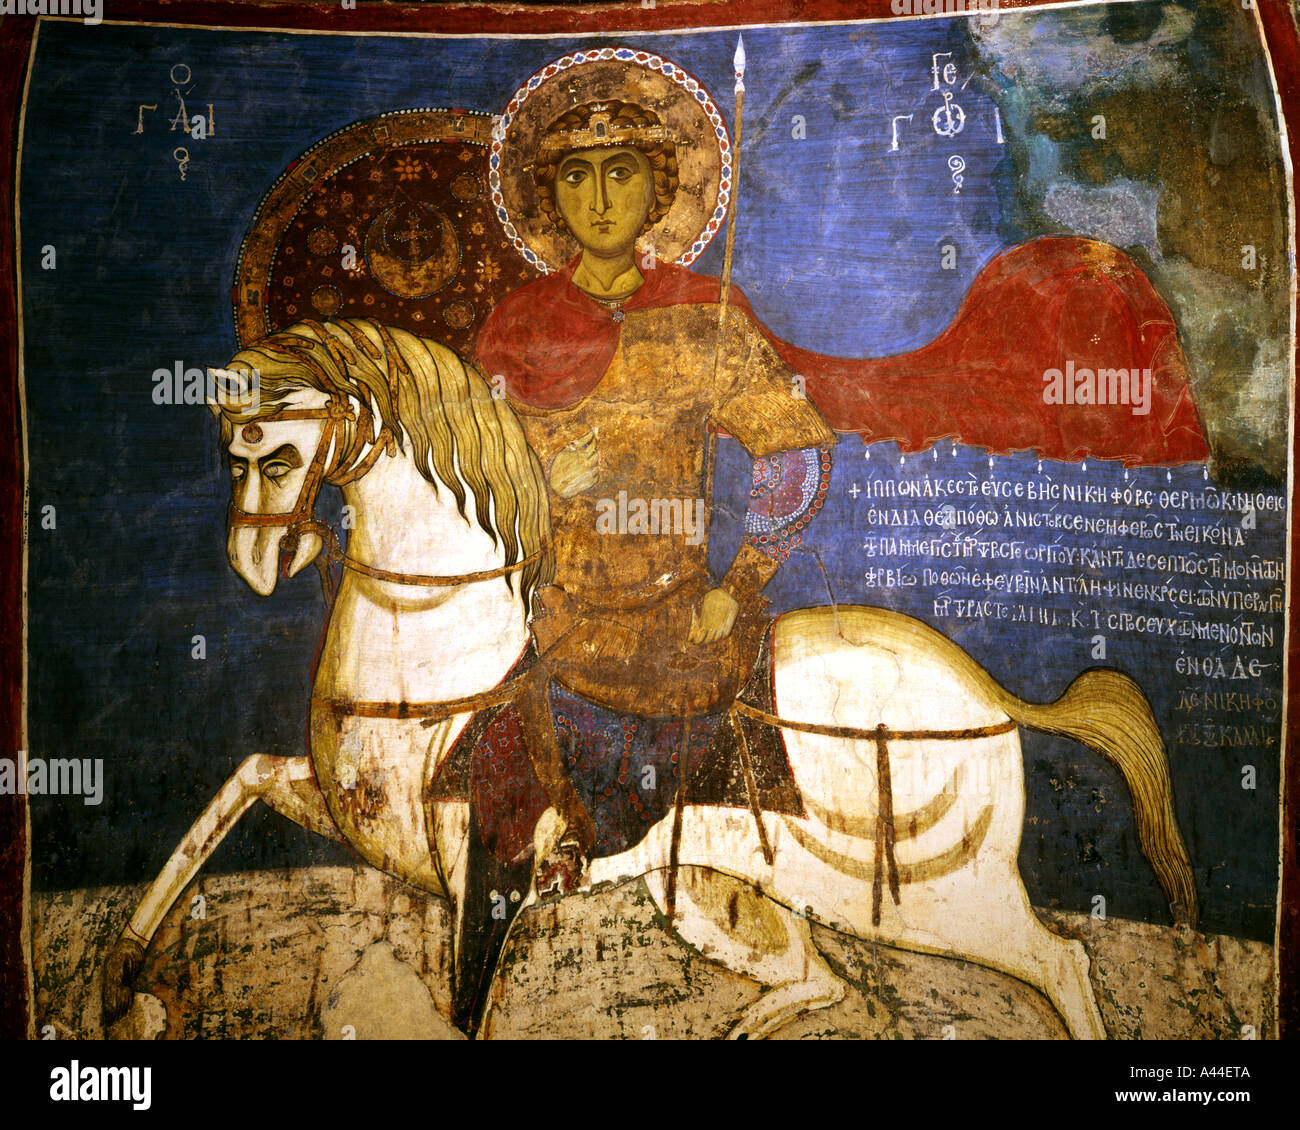 CY - ASSINOU : fresque à l'Église Byzantine Assinou Banque D'Images